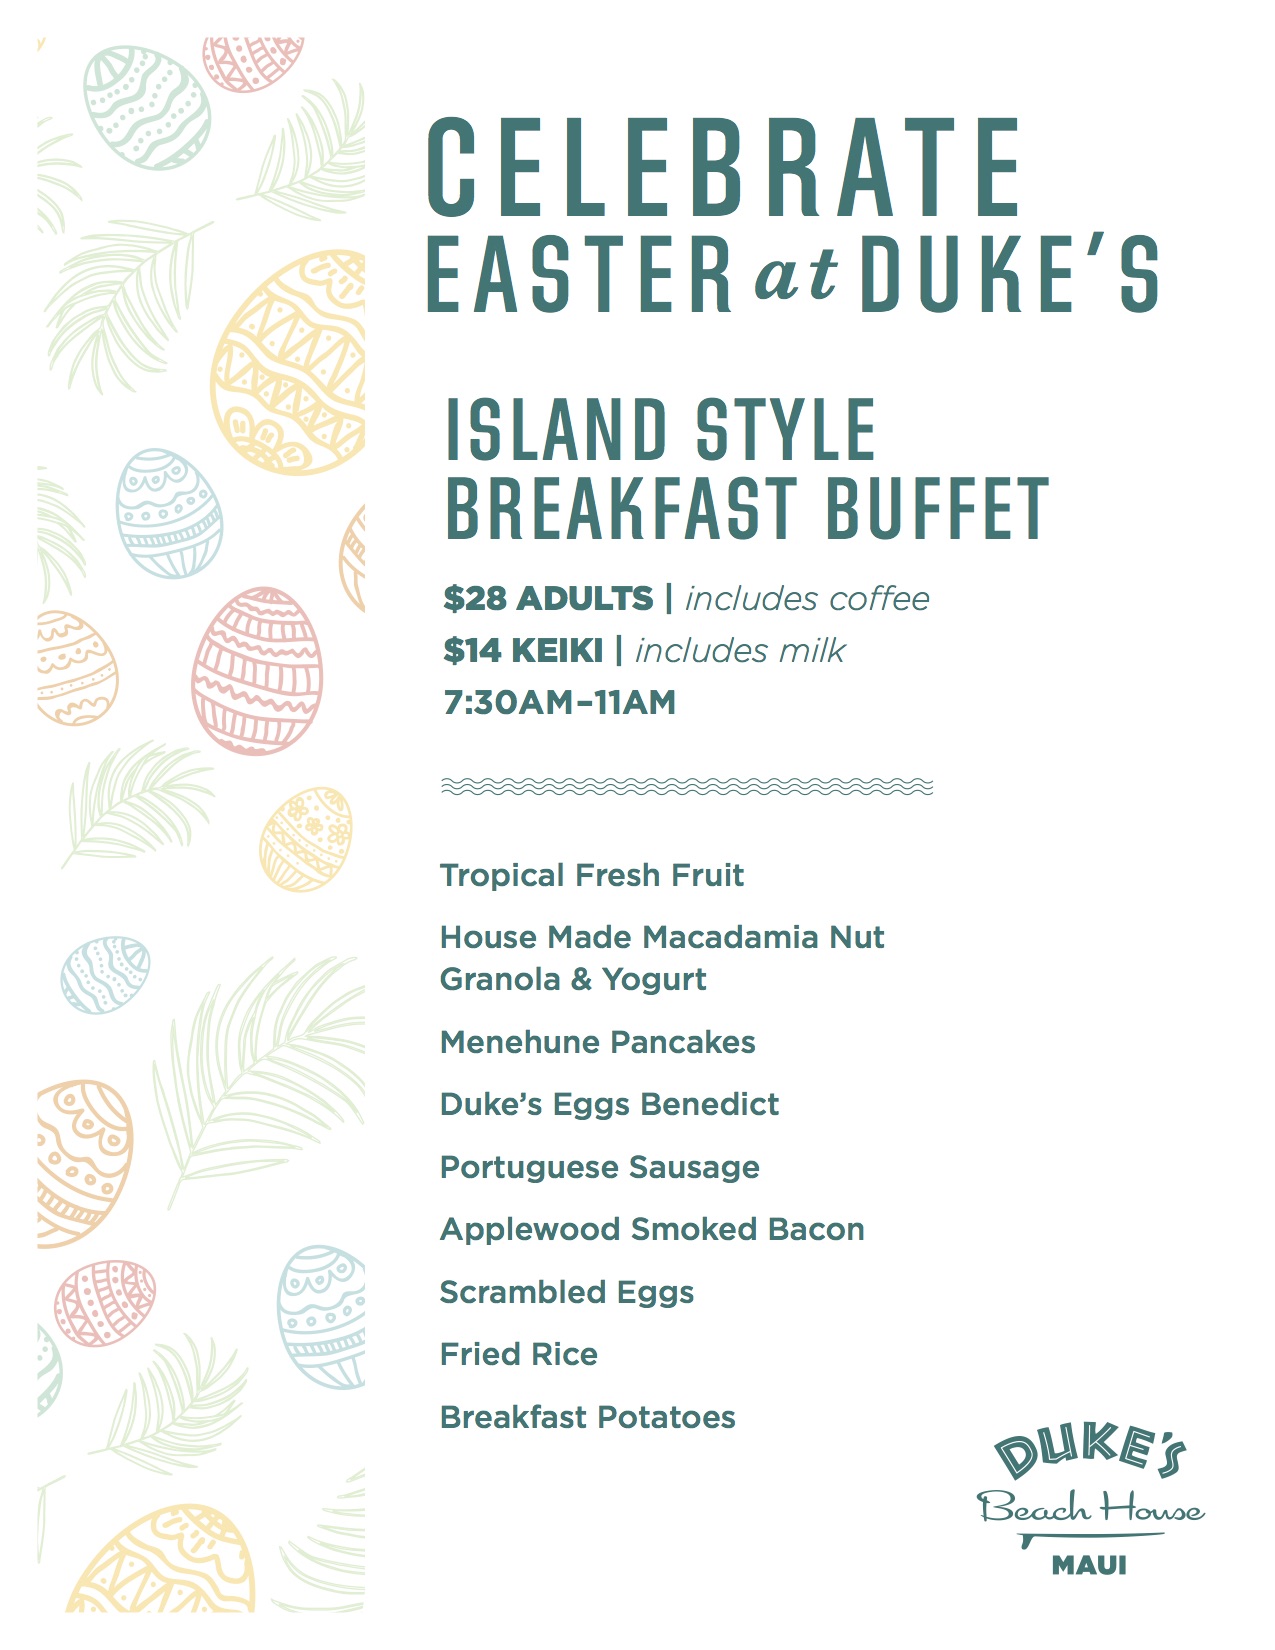 Easter menu for breakfast buffet